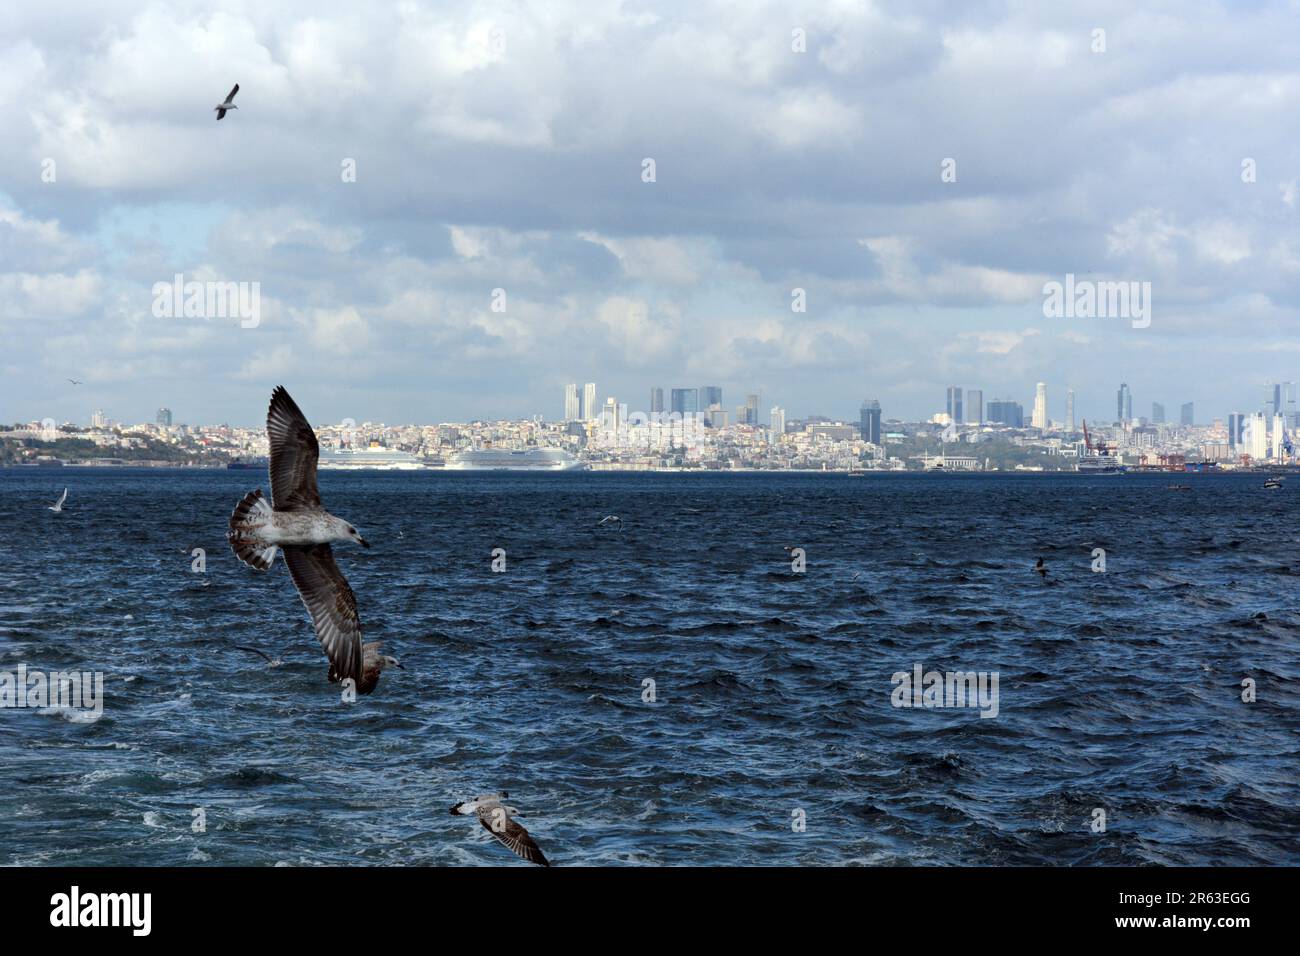 Gabbiani che volano dietro un traghetto passeggeri diretto in Asia nel Bosforo con lo skyline europeo di Istanbul sullo sfondo, Turkiye / Turchia. Foto Stock